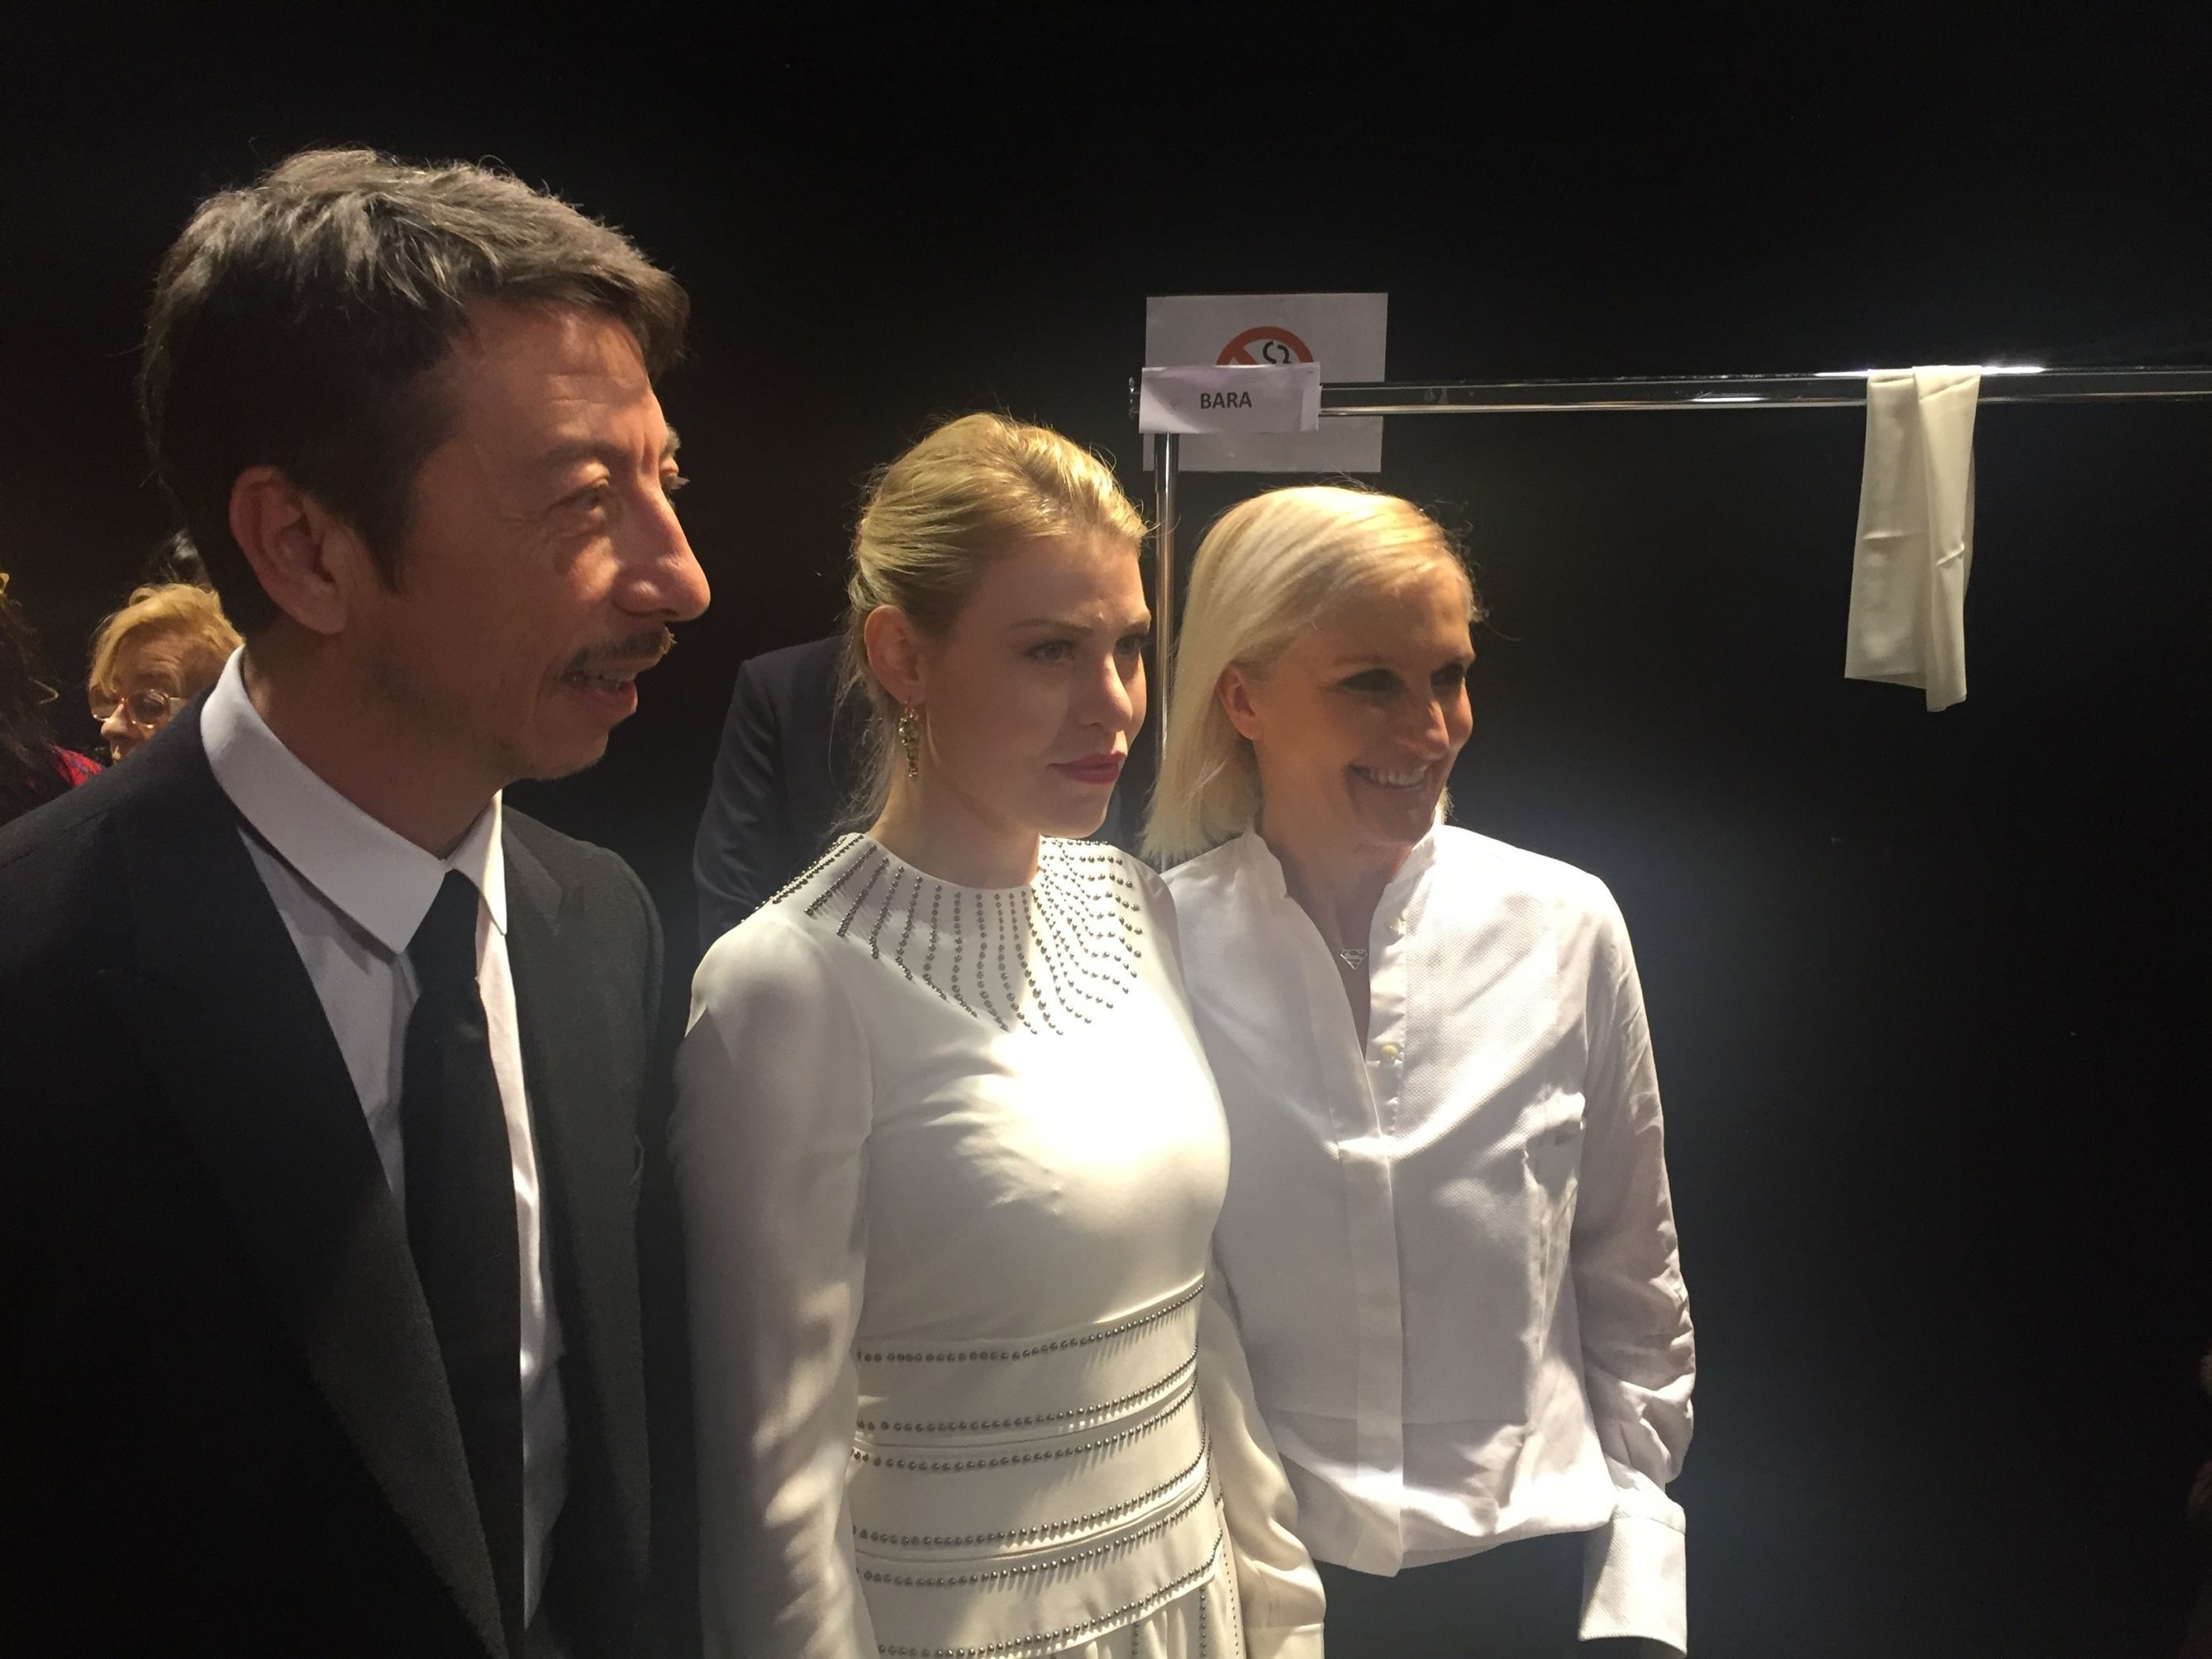 Barbara Berlusconi, CEO of AC Milan, guest at Valentino Fashion Show in Paris with the stylists Grazia Chiuri e Pierpaolo Piccioli. (PRNewsFoto/A.C. Milan Spa) (PRNewsFoto/A.C. Milan Spa)